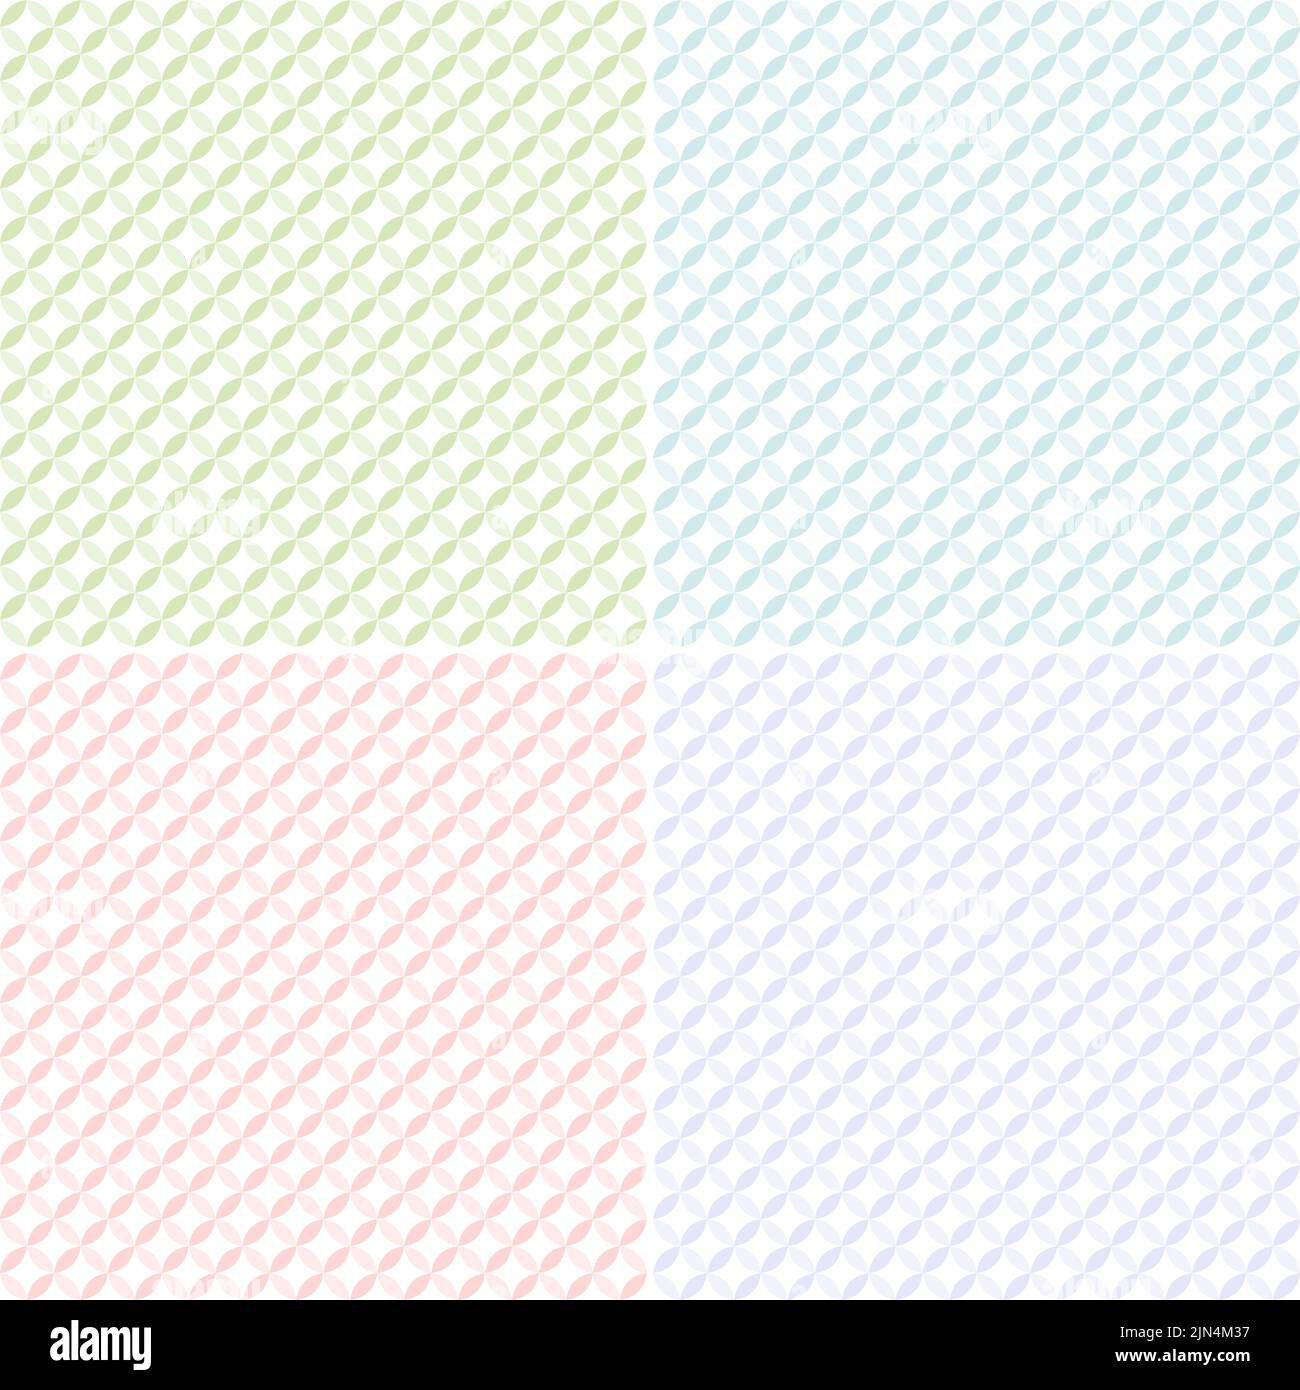 Nahtlose Muster geometrischer Formen in verschiedenen Pastellfarben auf Weiß. Vier hochauflösende abstrakte Hintergründe. Stockfoto